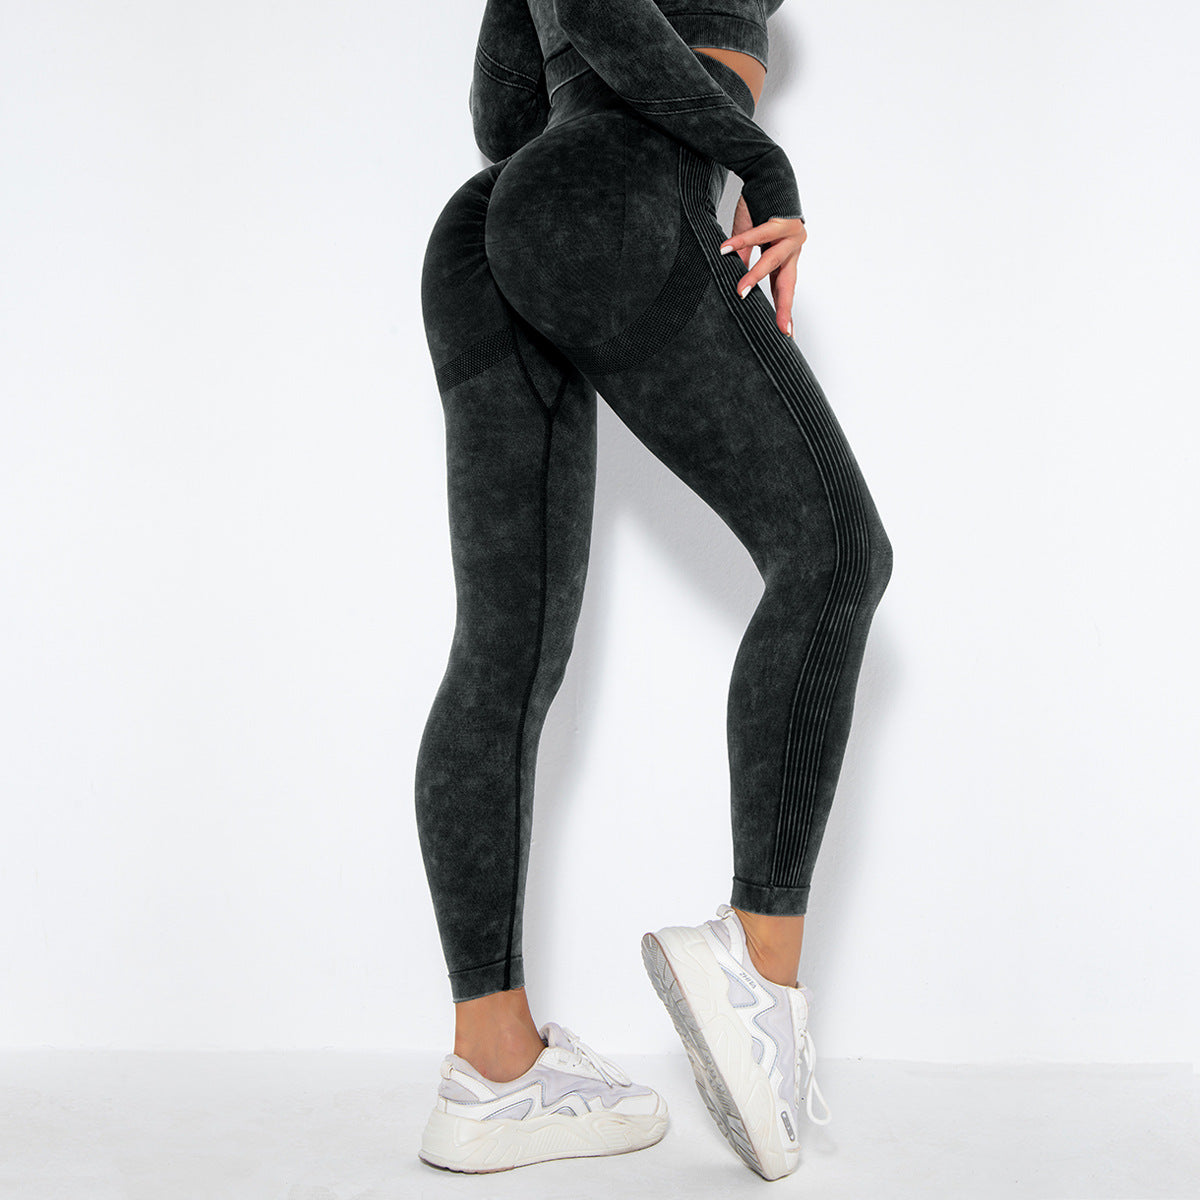 Fashion Sexy Peach Hip Wicking Yoga Pants - Dignitestore Black / S Leggings